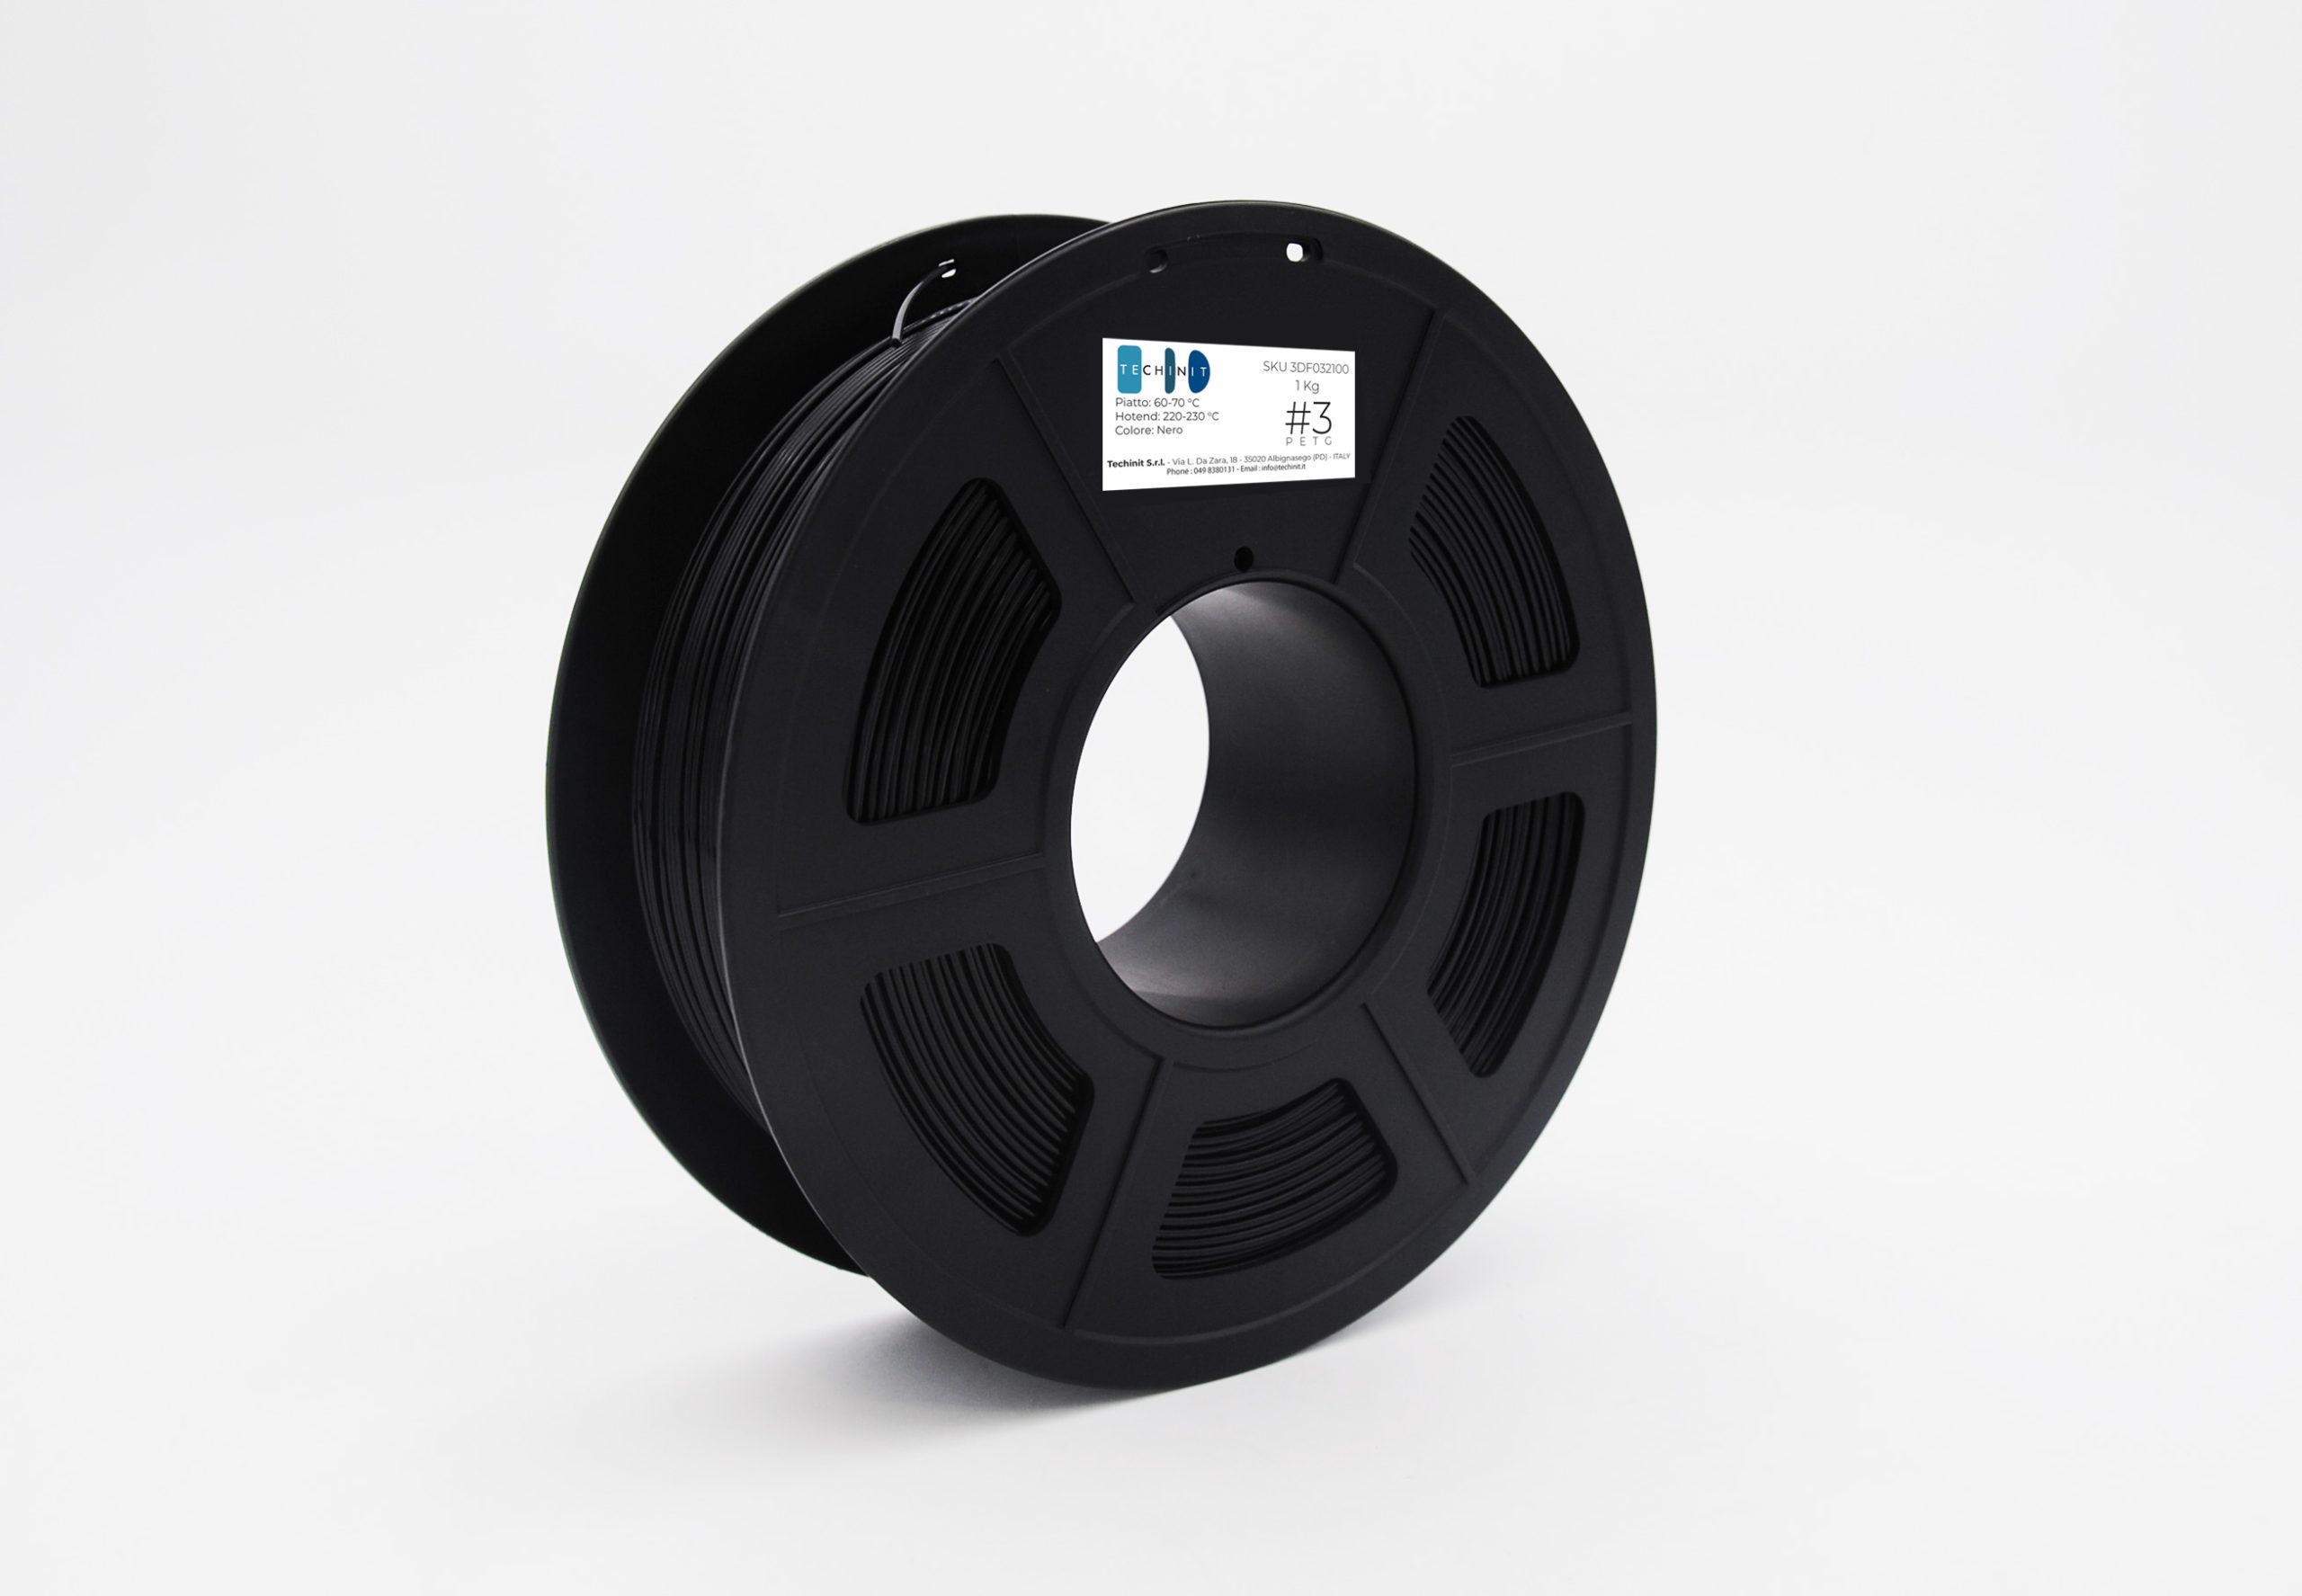 Techinit #3 - Filamento in PETG per stampante 3D - Ø 1.75 mm - Colore nero  - Bobina da 1 kg - Techinit